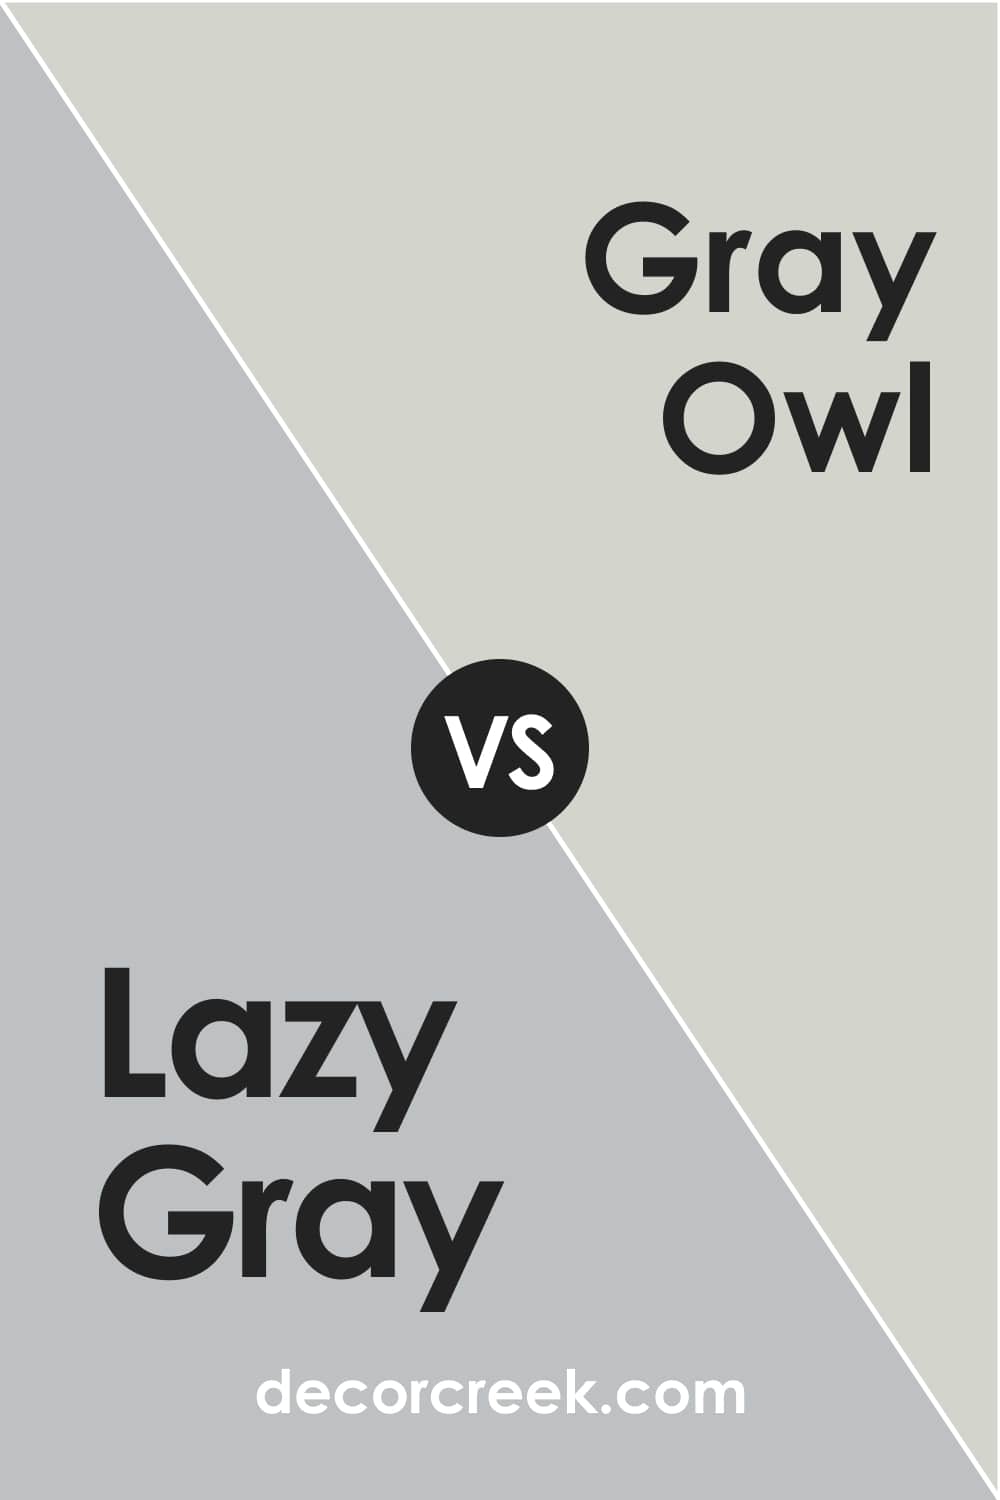 Lazy Gray vs. Gray Owl